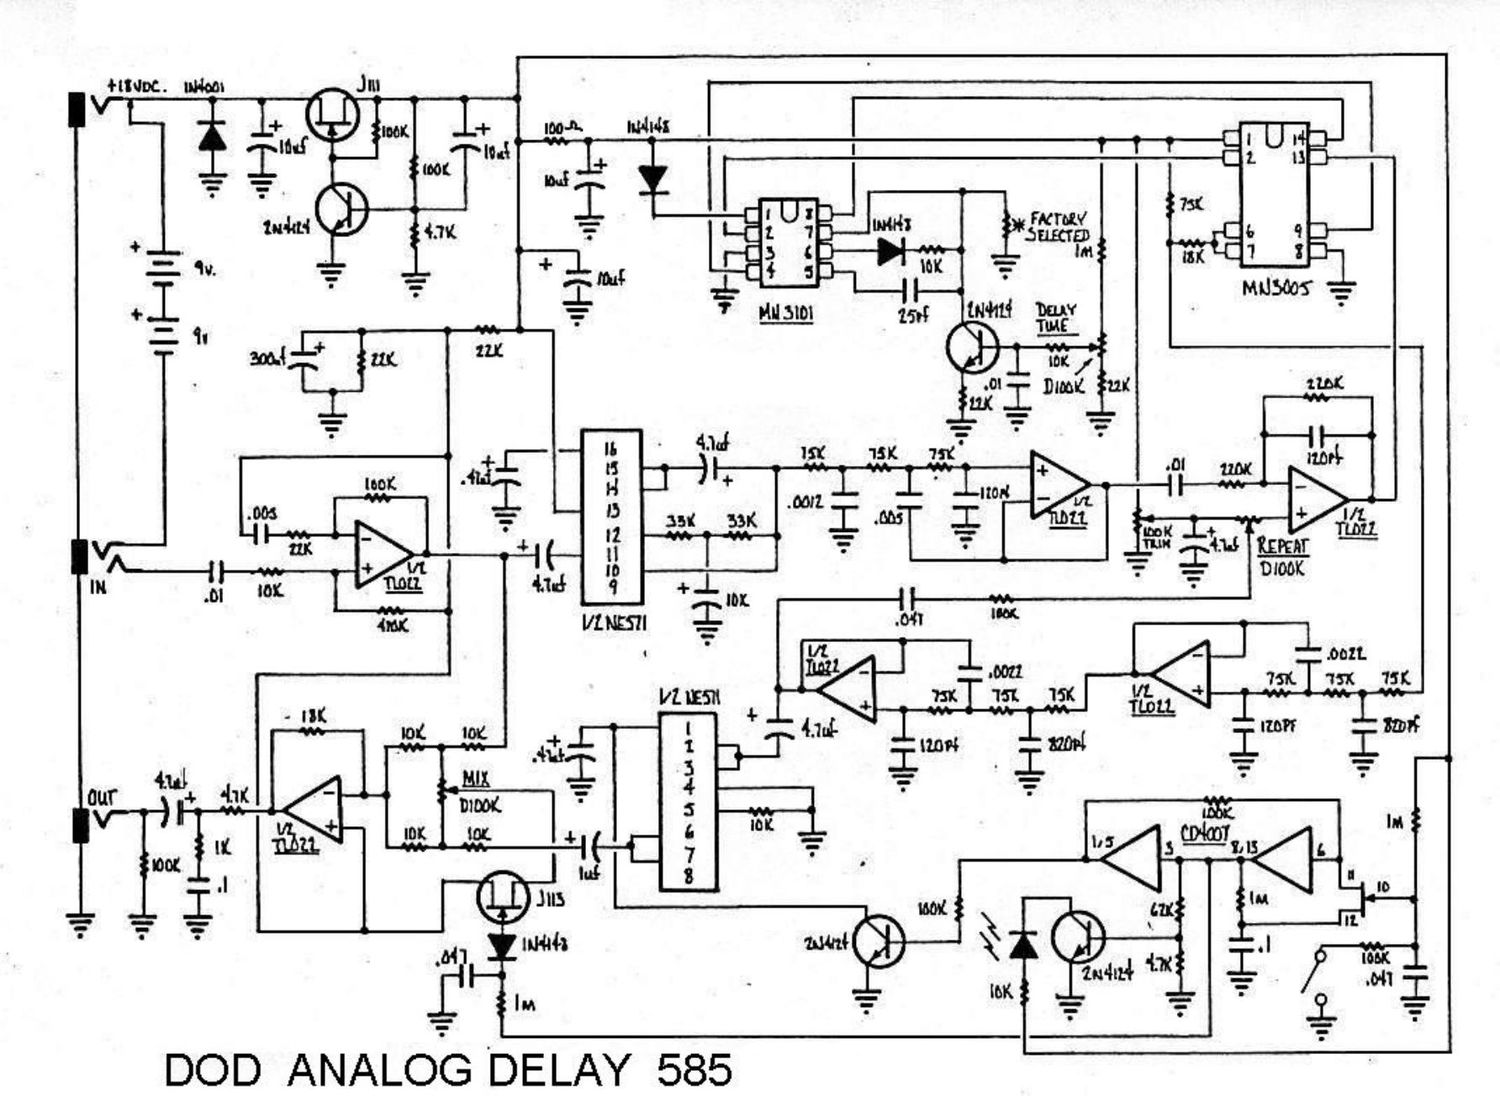 dod 585 analog delay schematic